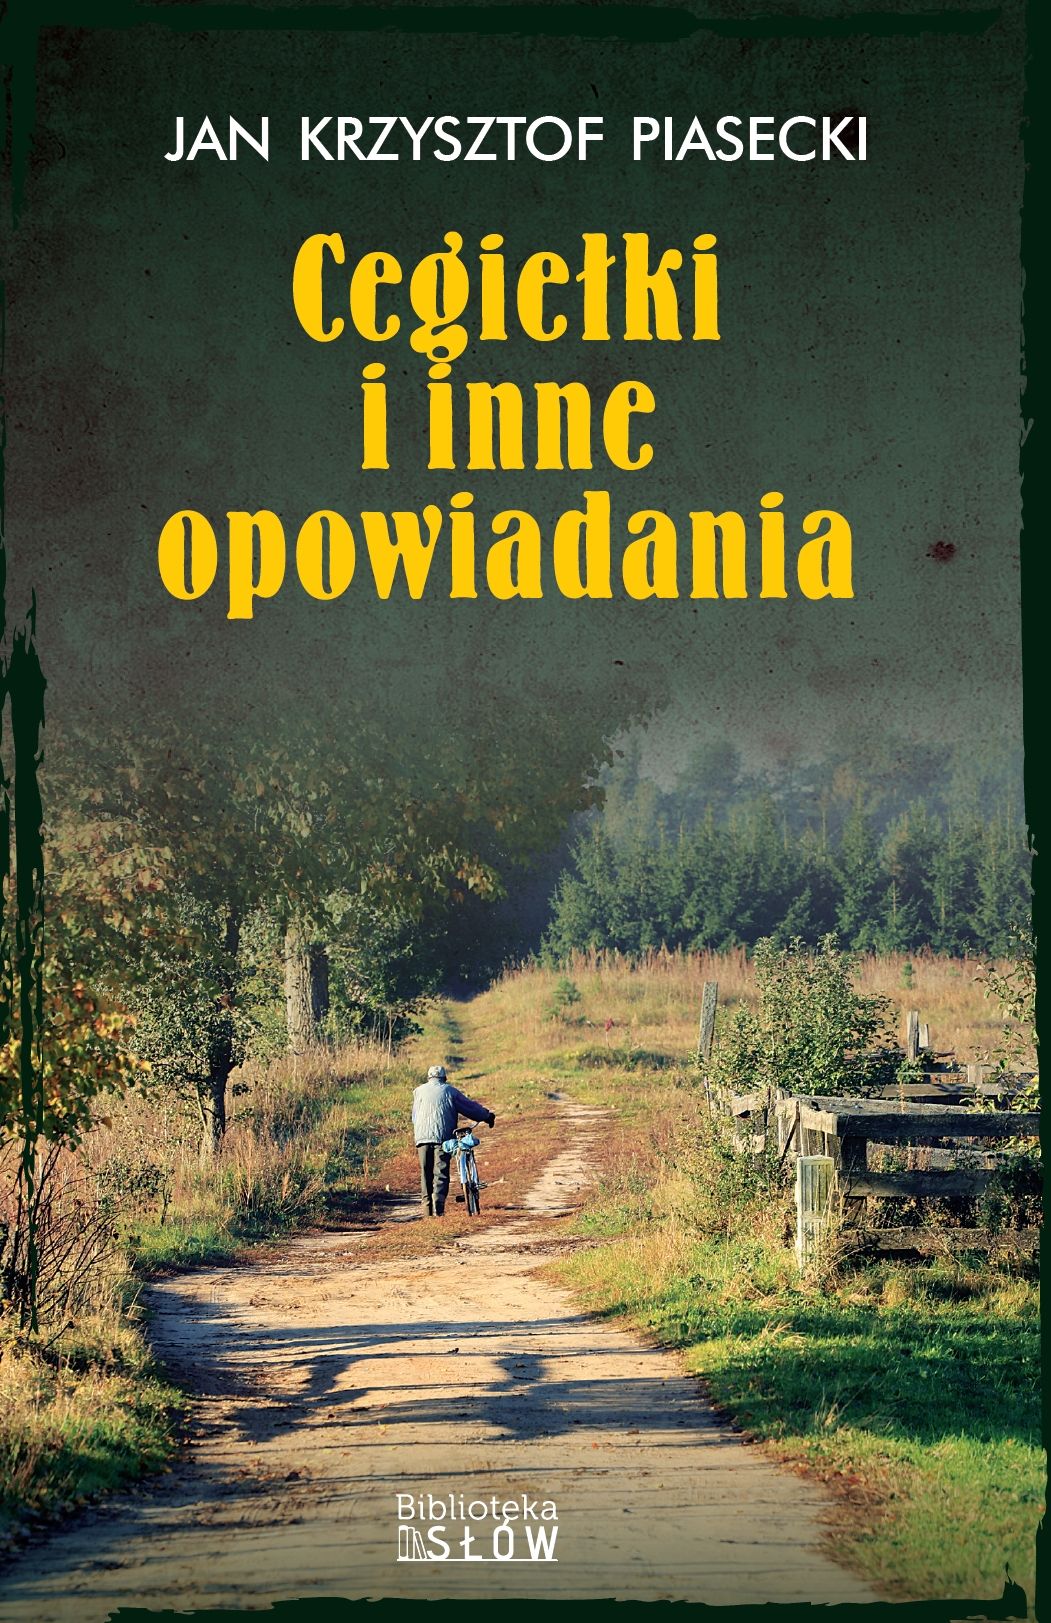 "Cegiełki i inne opowiadania", Jan Krzysztof Piasecki, 